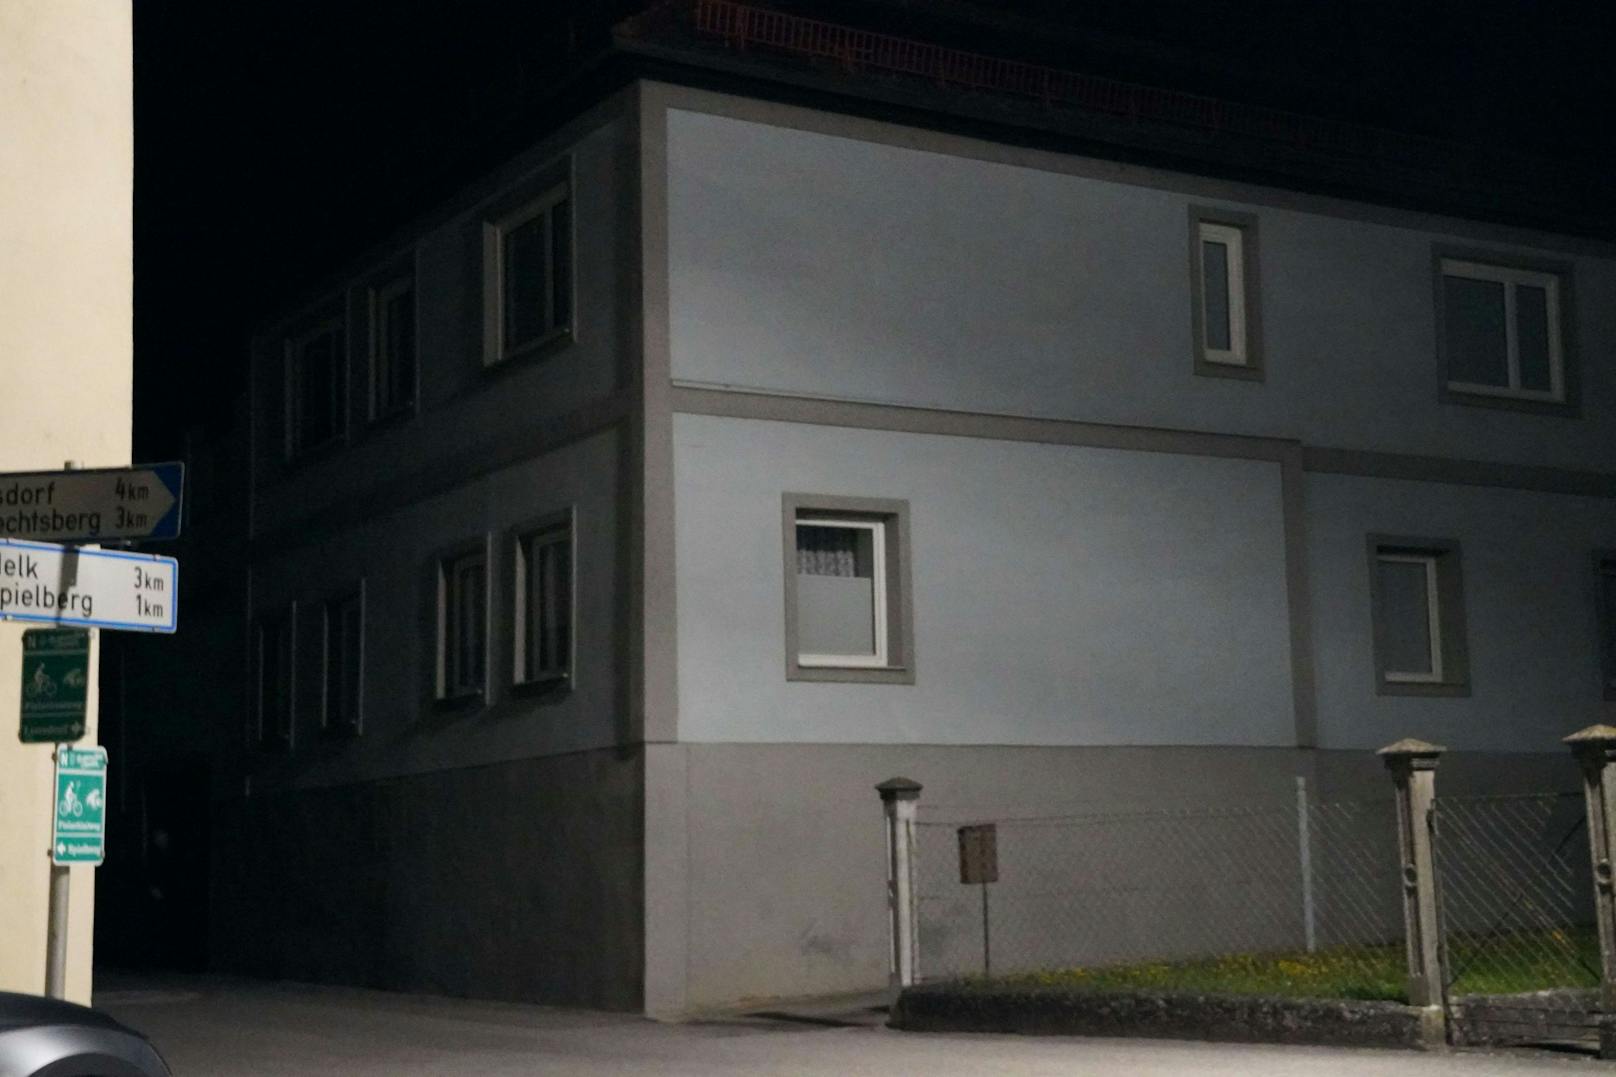 Unauffällig, uncharmant: Das Haus in Pielach, 3 km von der Bezirkshauptstadt entfernt&nbsp;